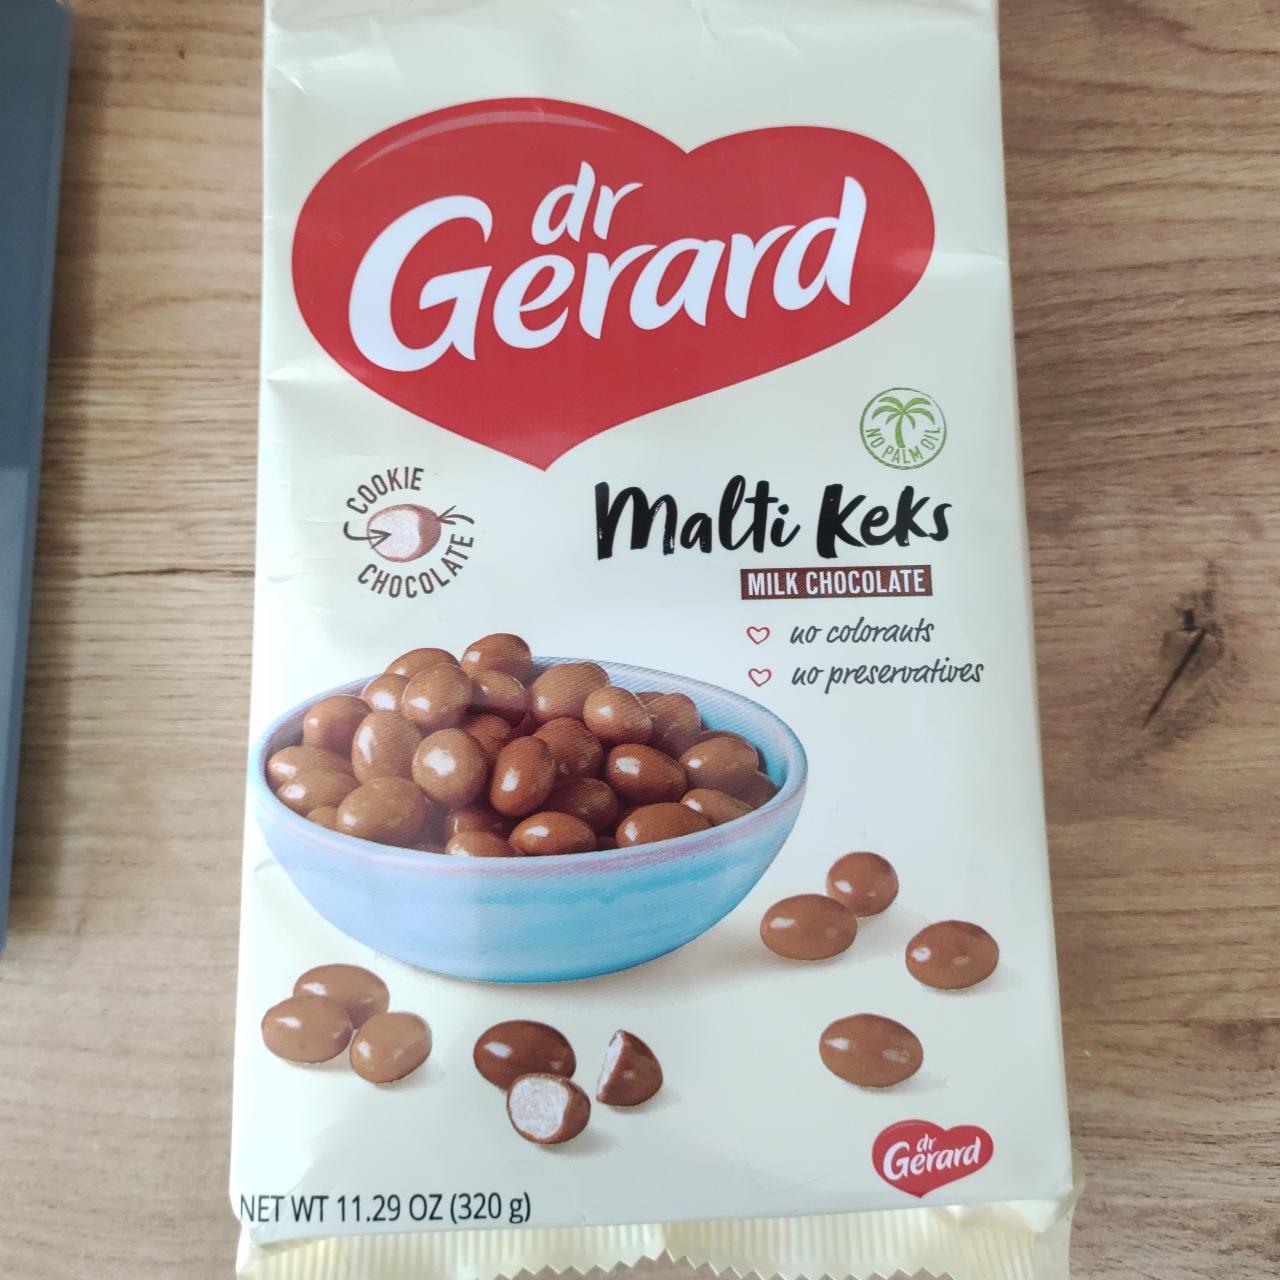 Фото - десерт мини печеньки в молочном шоколаде Malti Keks Dr. Gerand